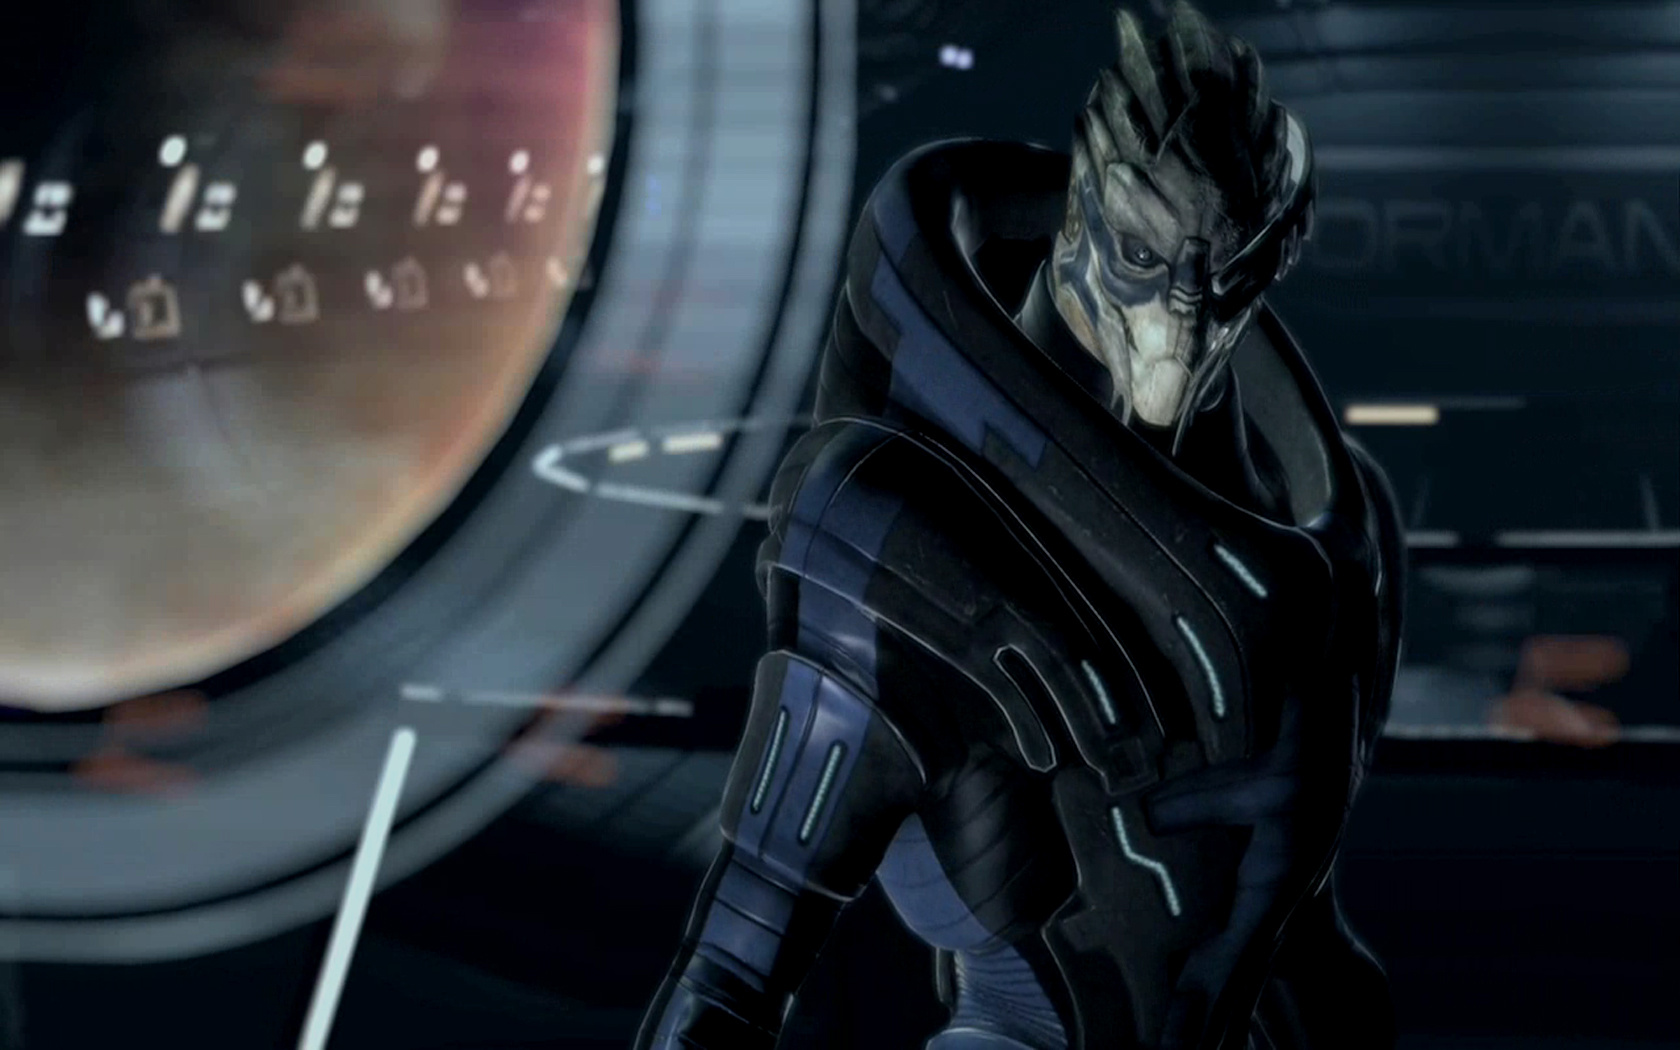 Mass Effect Garrus Vakarian Turian Wallpaper Background